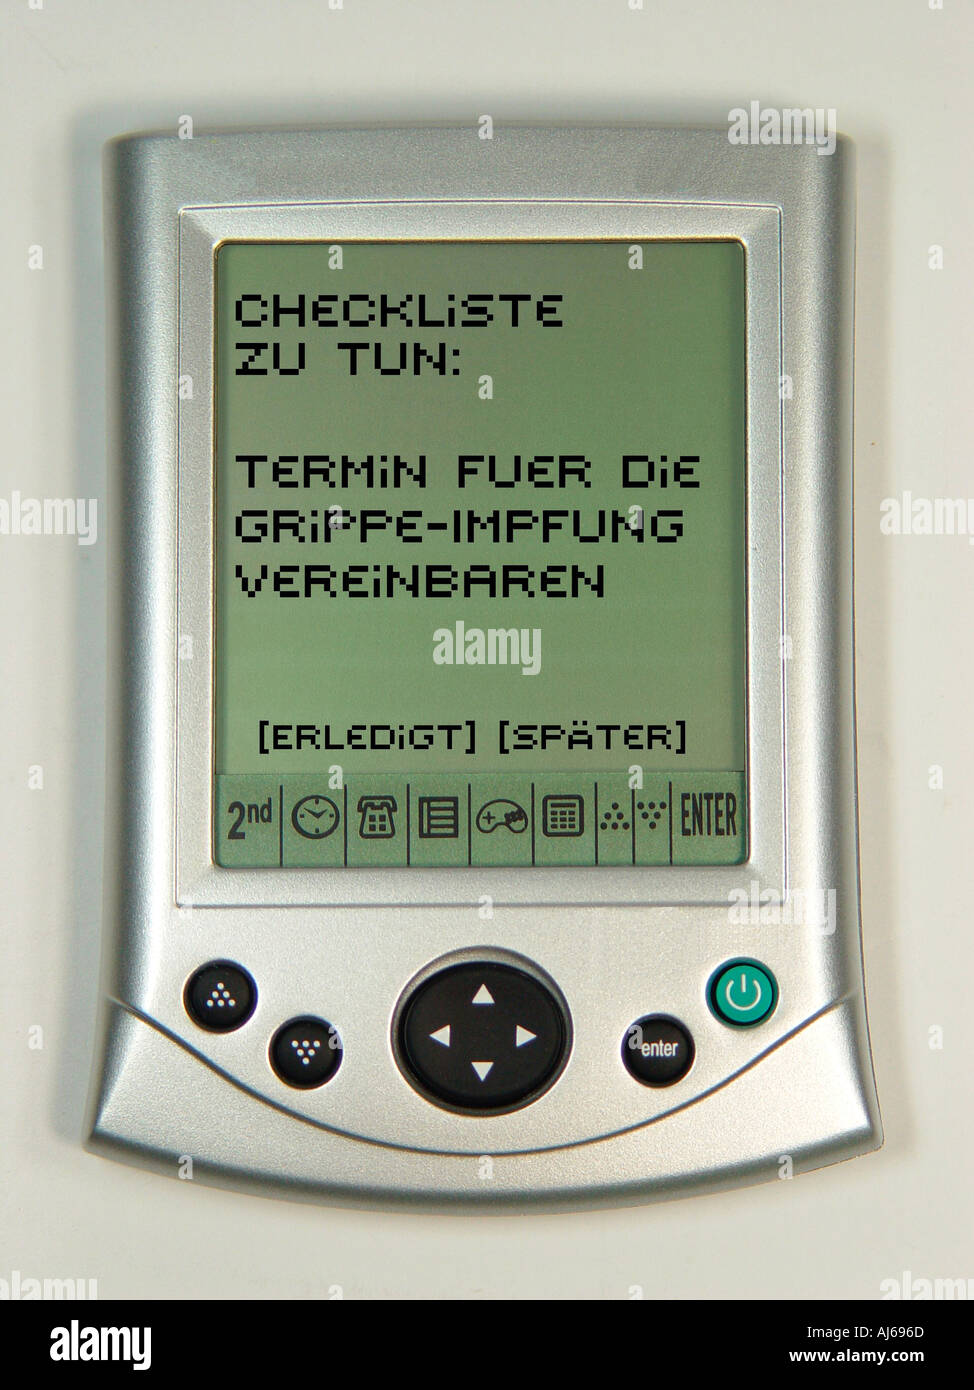 PDA als Symbol fuer modernes Terminmanagment bzw elektronische Terminvereinbarung z B fuer eine Grippeimpfung Stock Photo